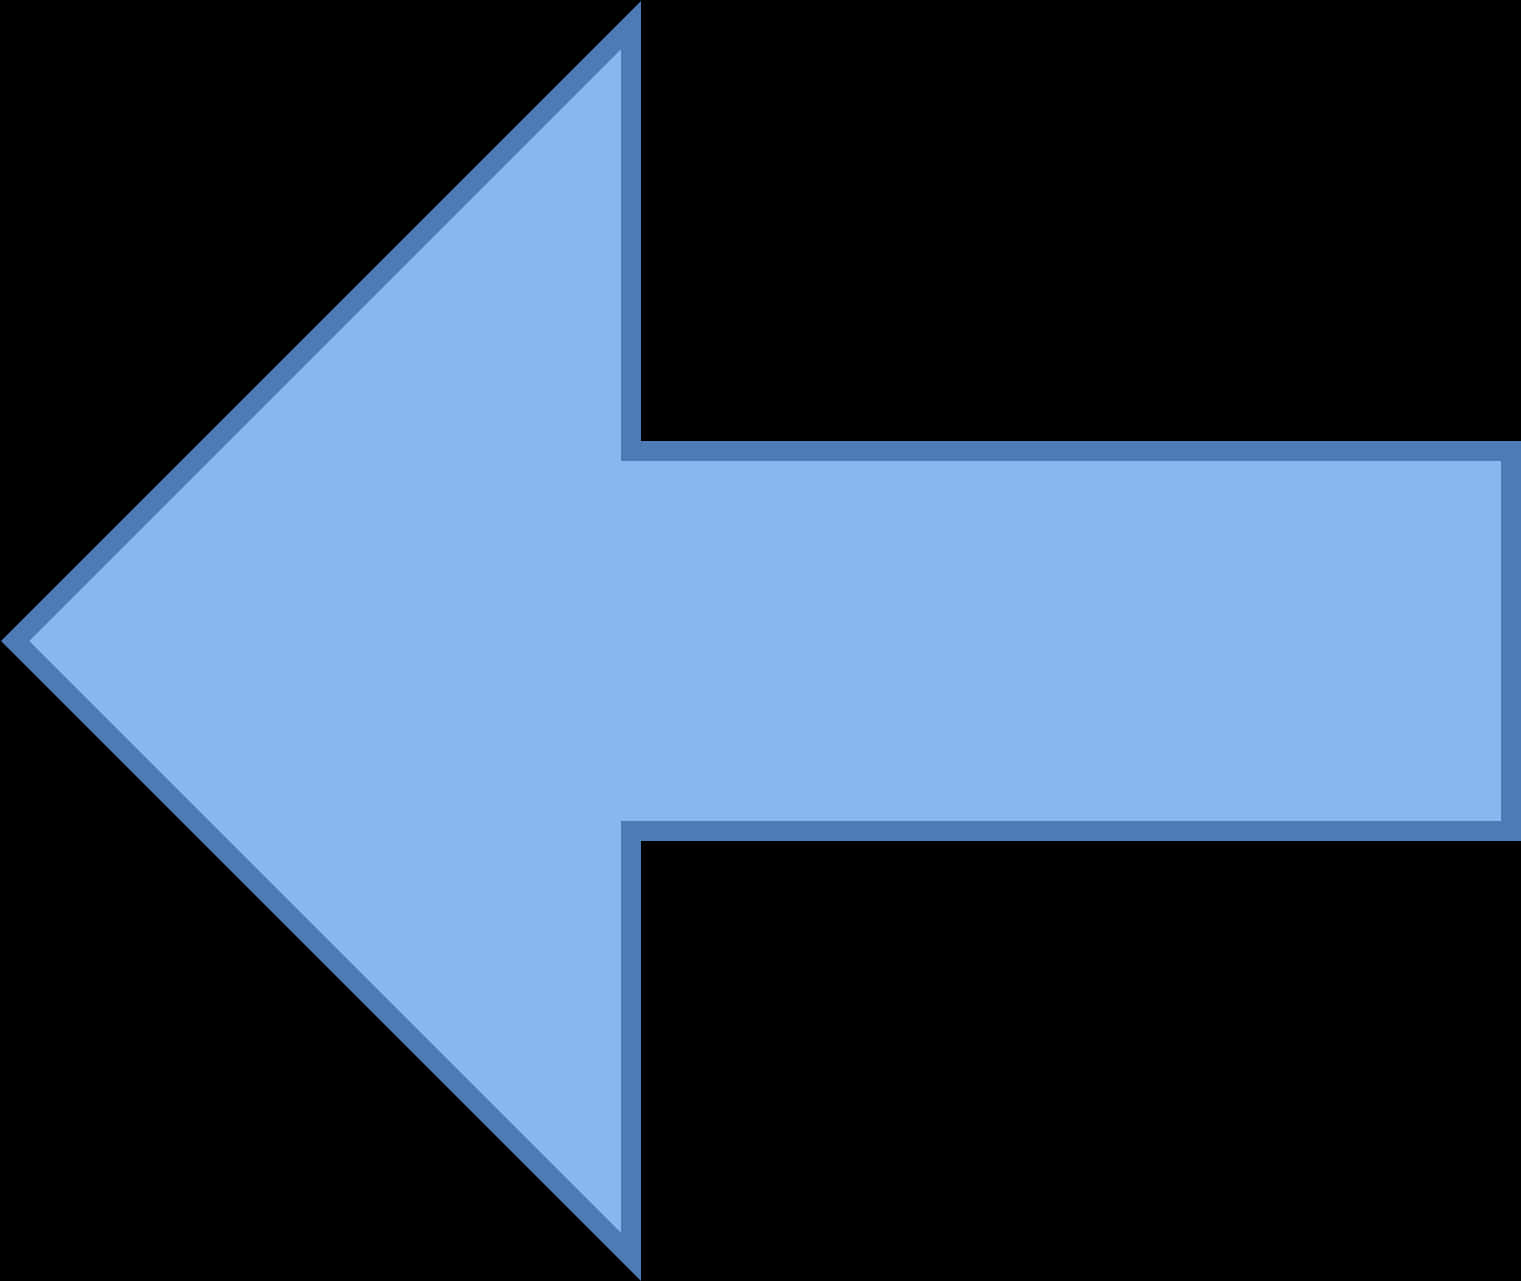 Blue Left Arrow Graphic PNG image